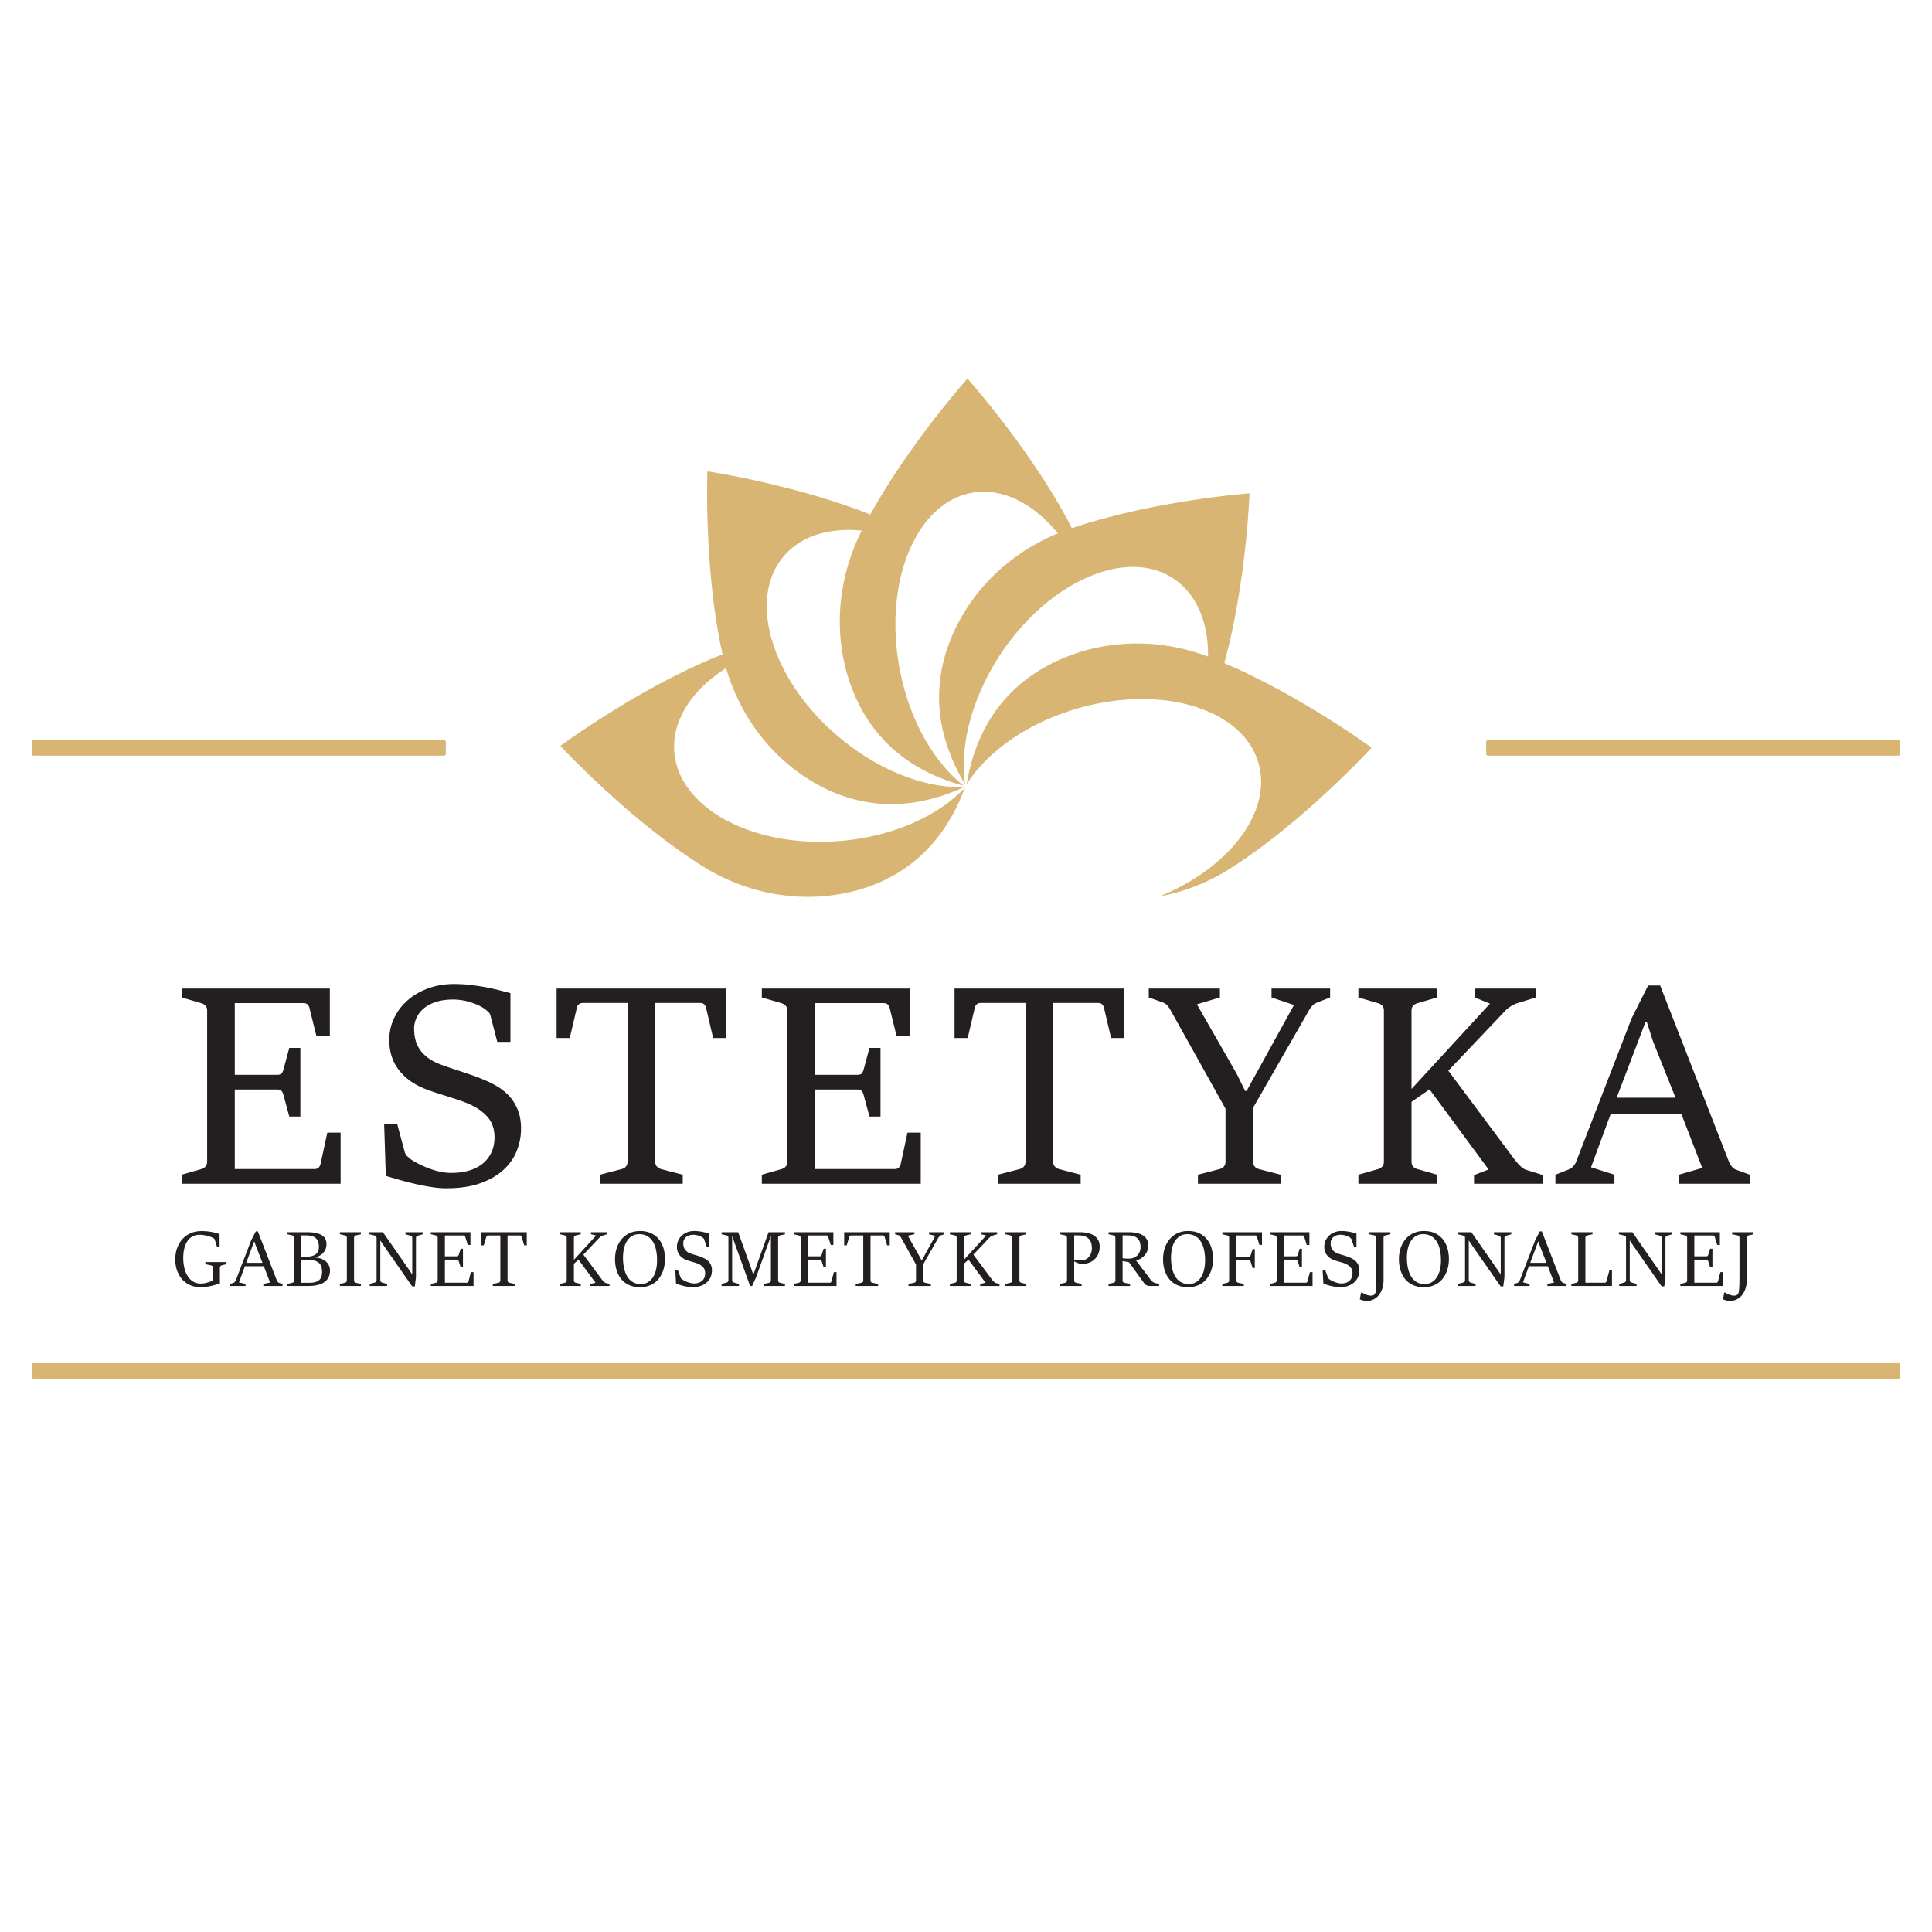 Gabinet Estetyka